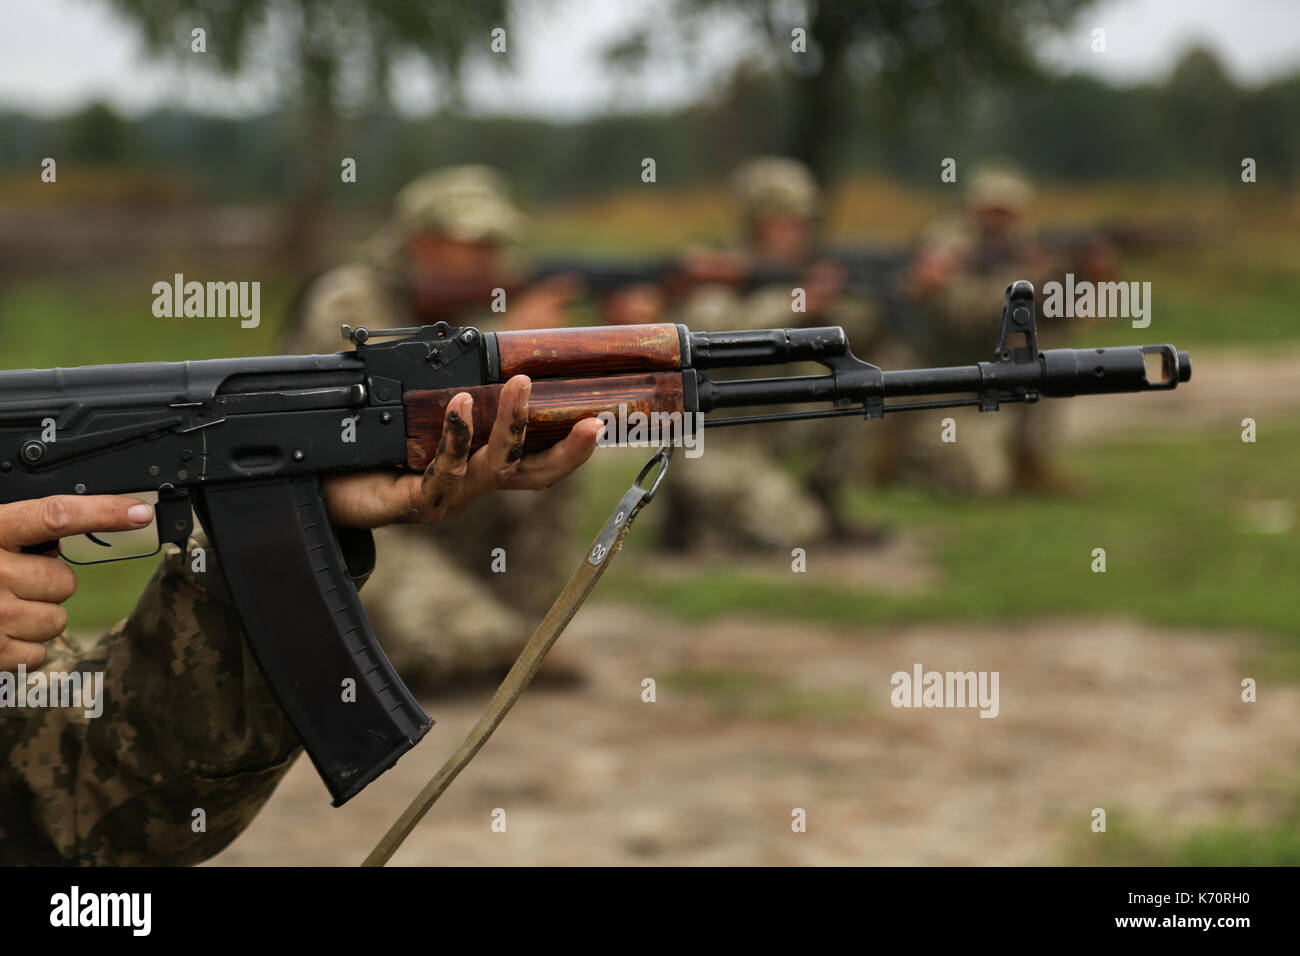 AK-74 Stock Photo